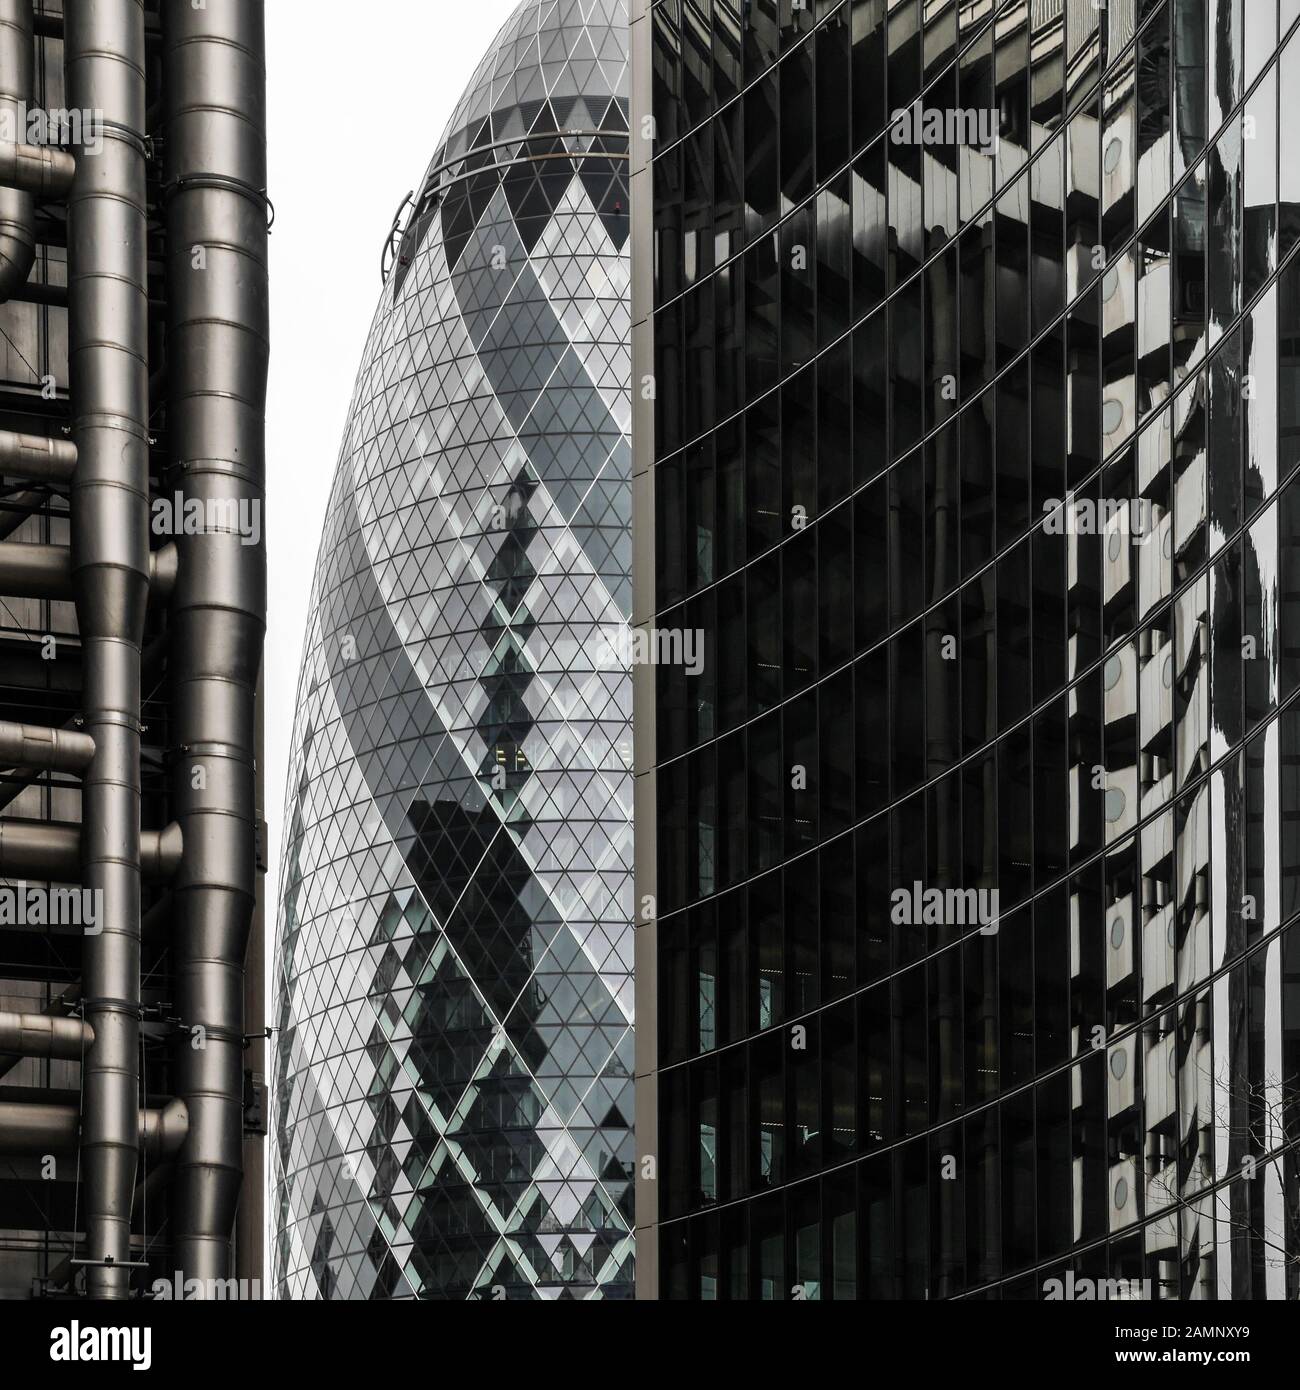 City of London financial architettoniche tra cui la mitica Gherkin, Lloyds Building (sinistra) e Willis torri (a destra). Foto Stock